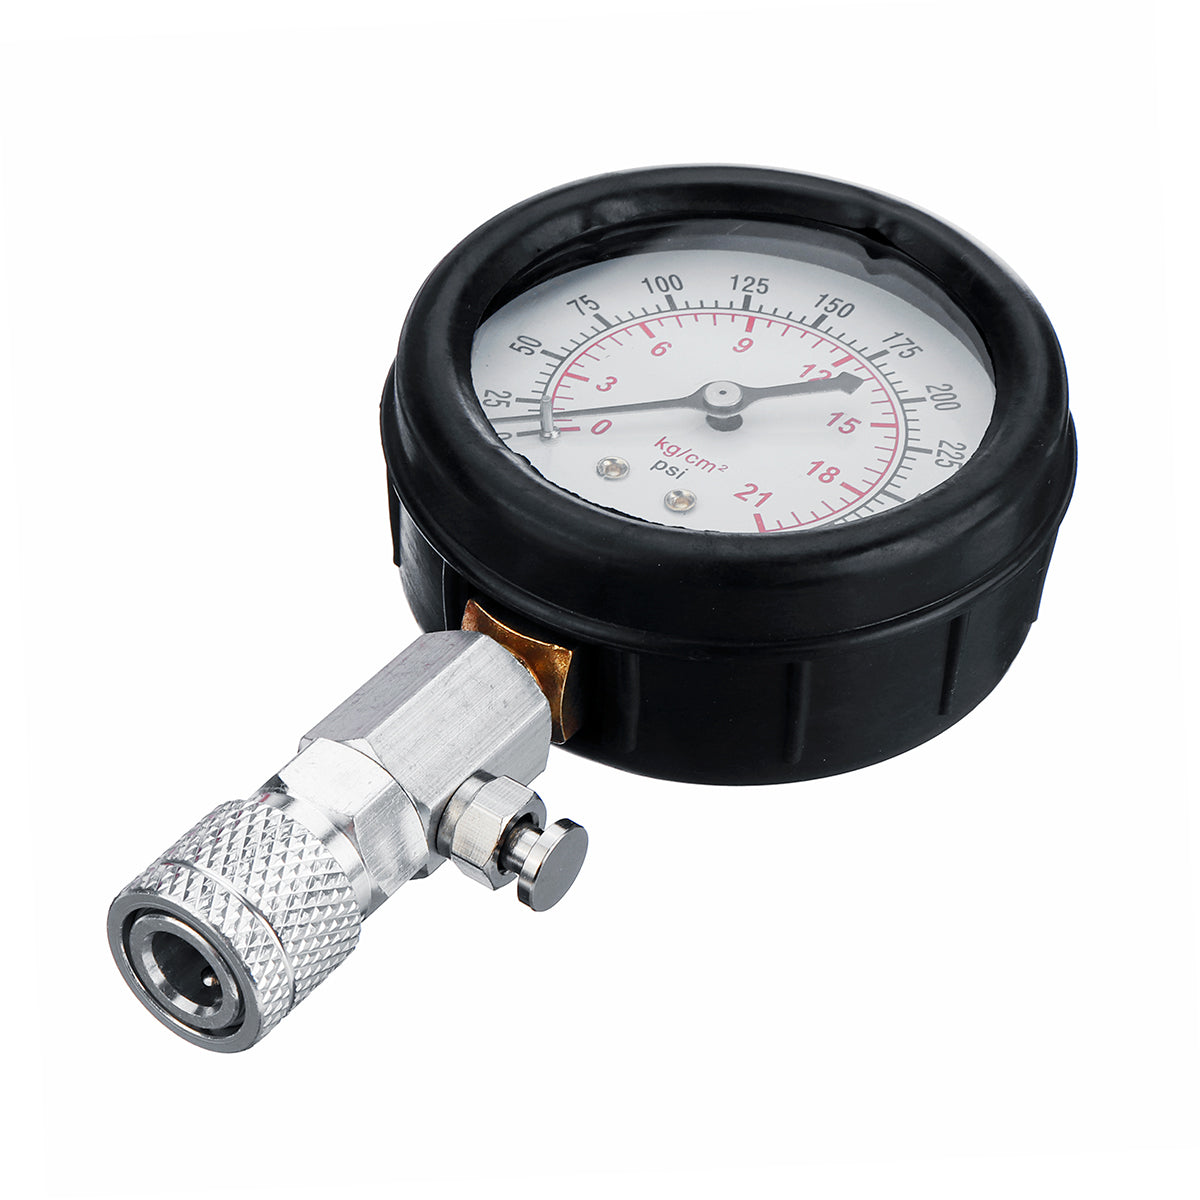 Black Petrol Engine Cylinder Pressure Gauge Diagnostic Tool Compression Tester For Motorcycle Car